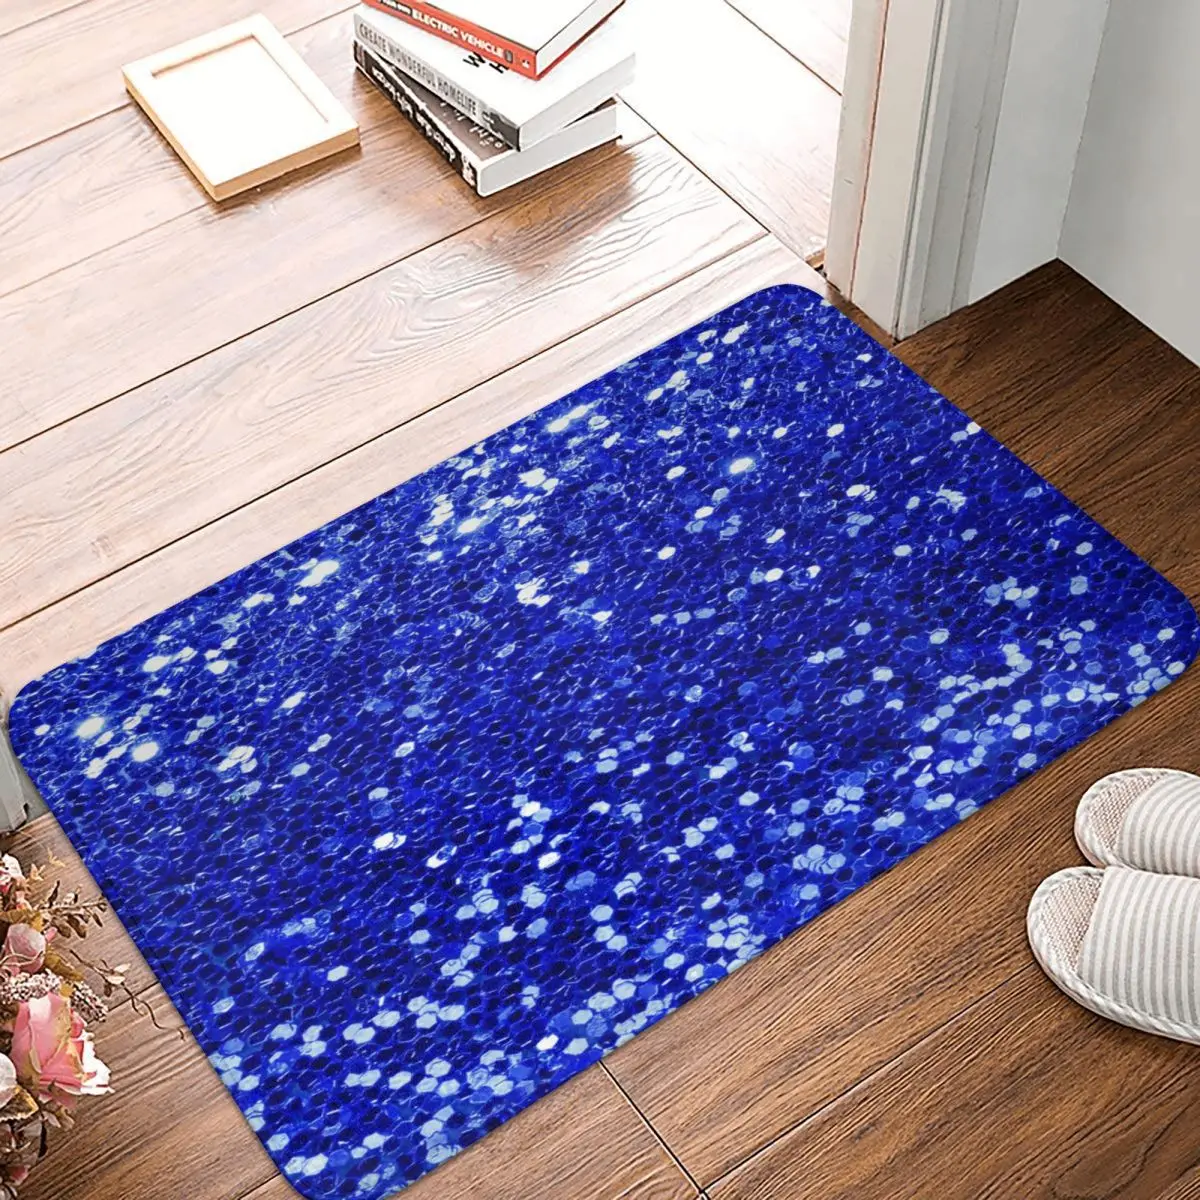 

Сине-синий блестящий ковер, напольные коврики из полиэстера, милый стиль, для гостиной, легко чистить, праздничные подарки, коврики на заказ